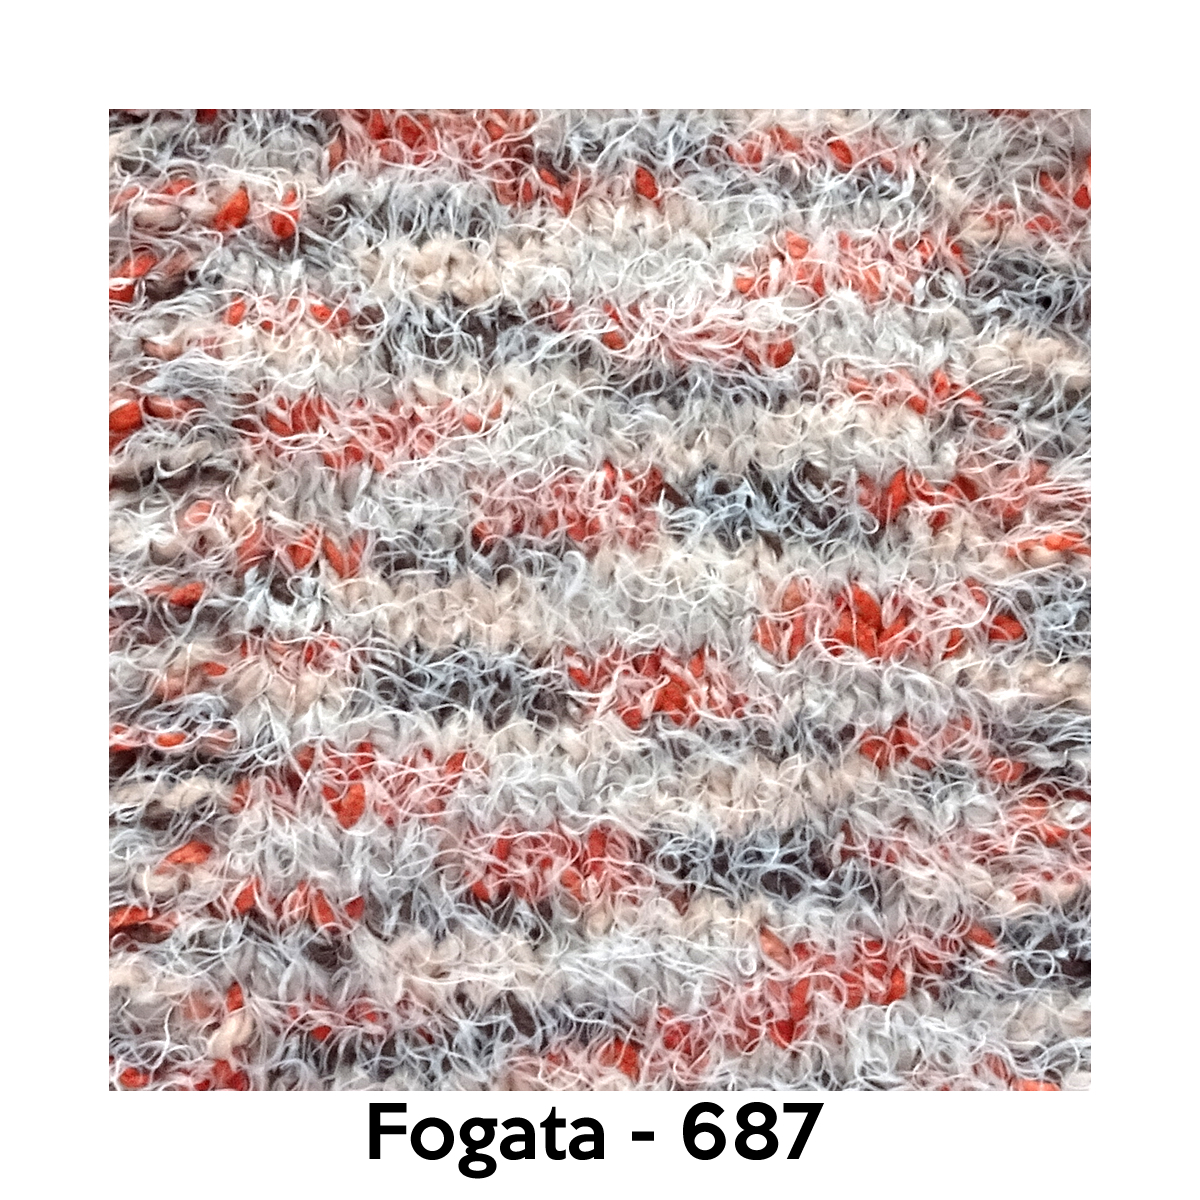 Fogata - 687